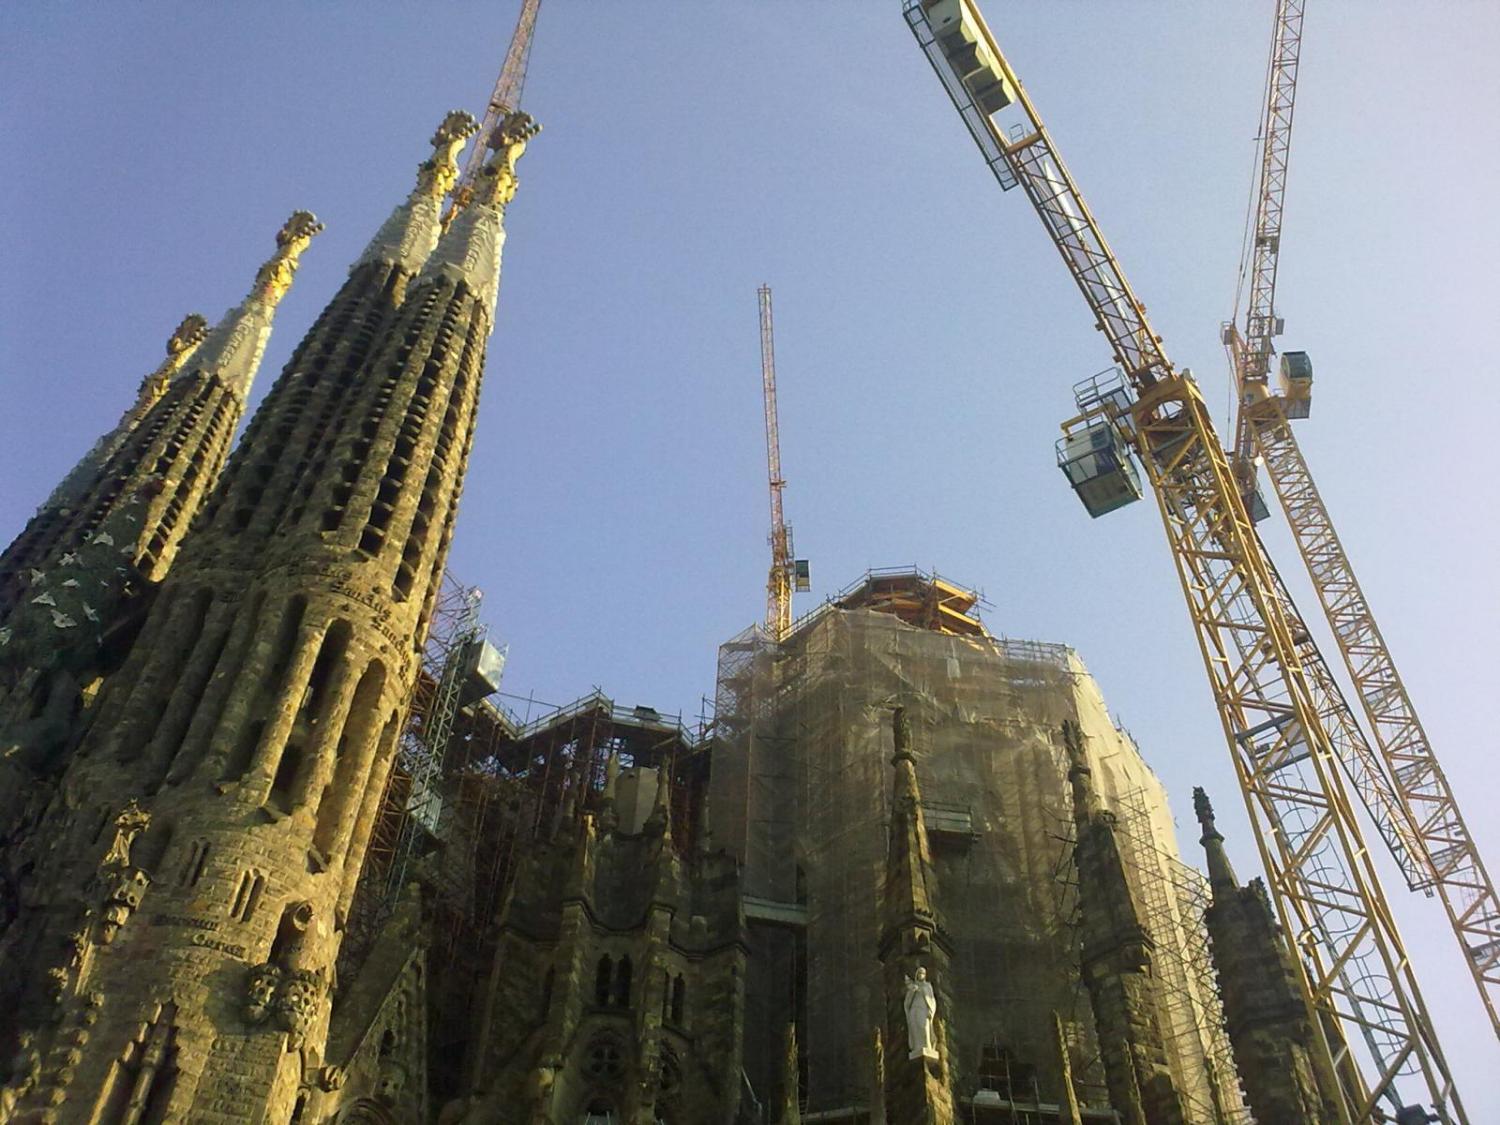 Building the Sagrada Familia